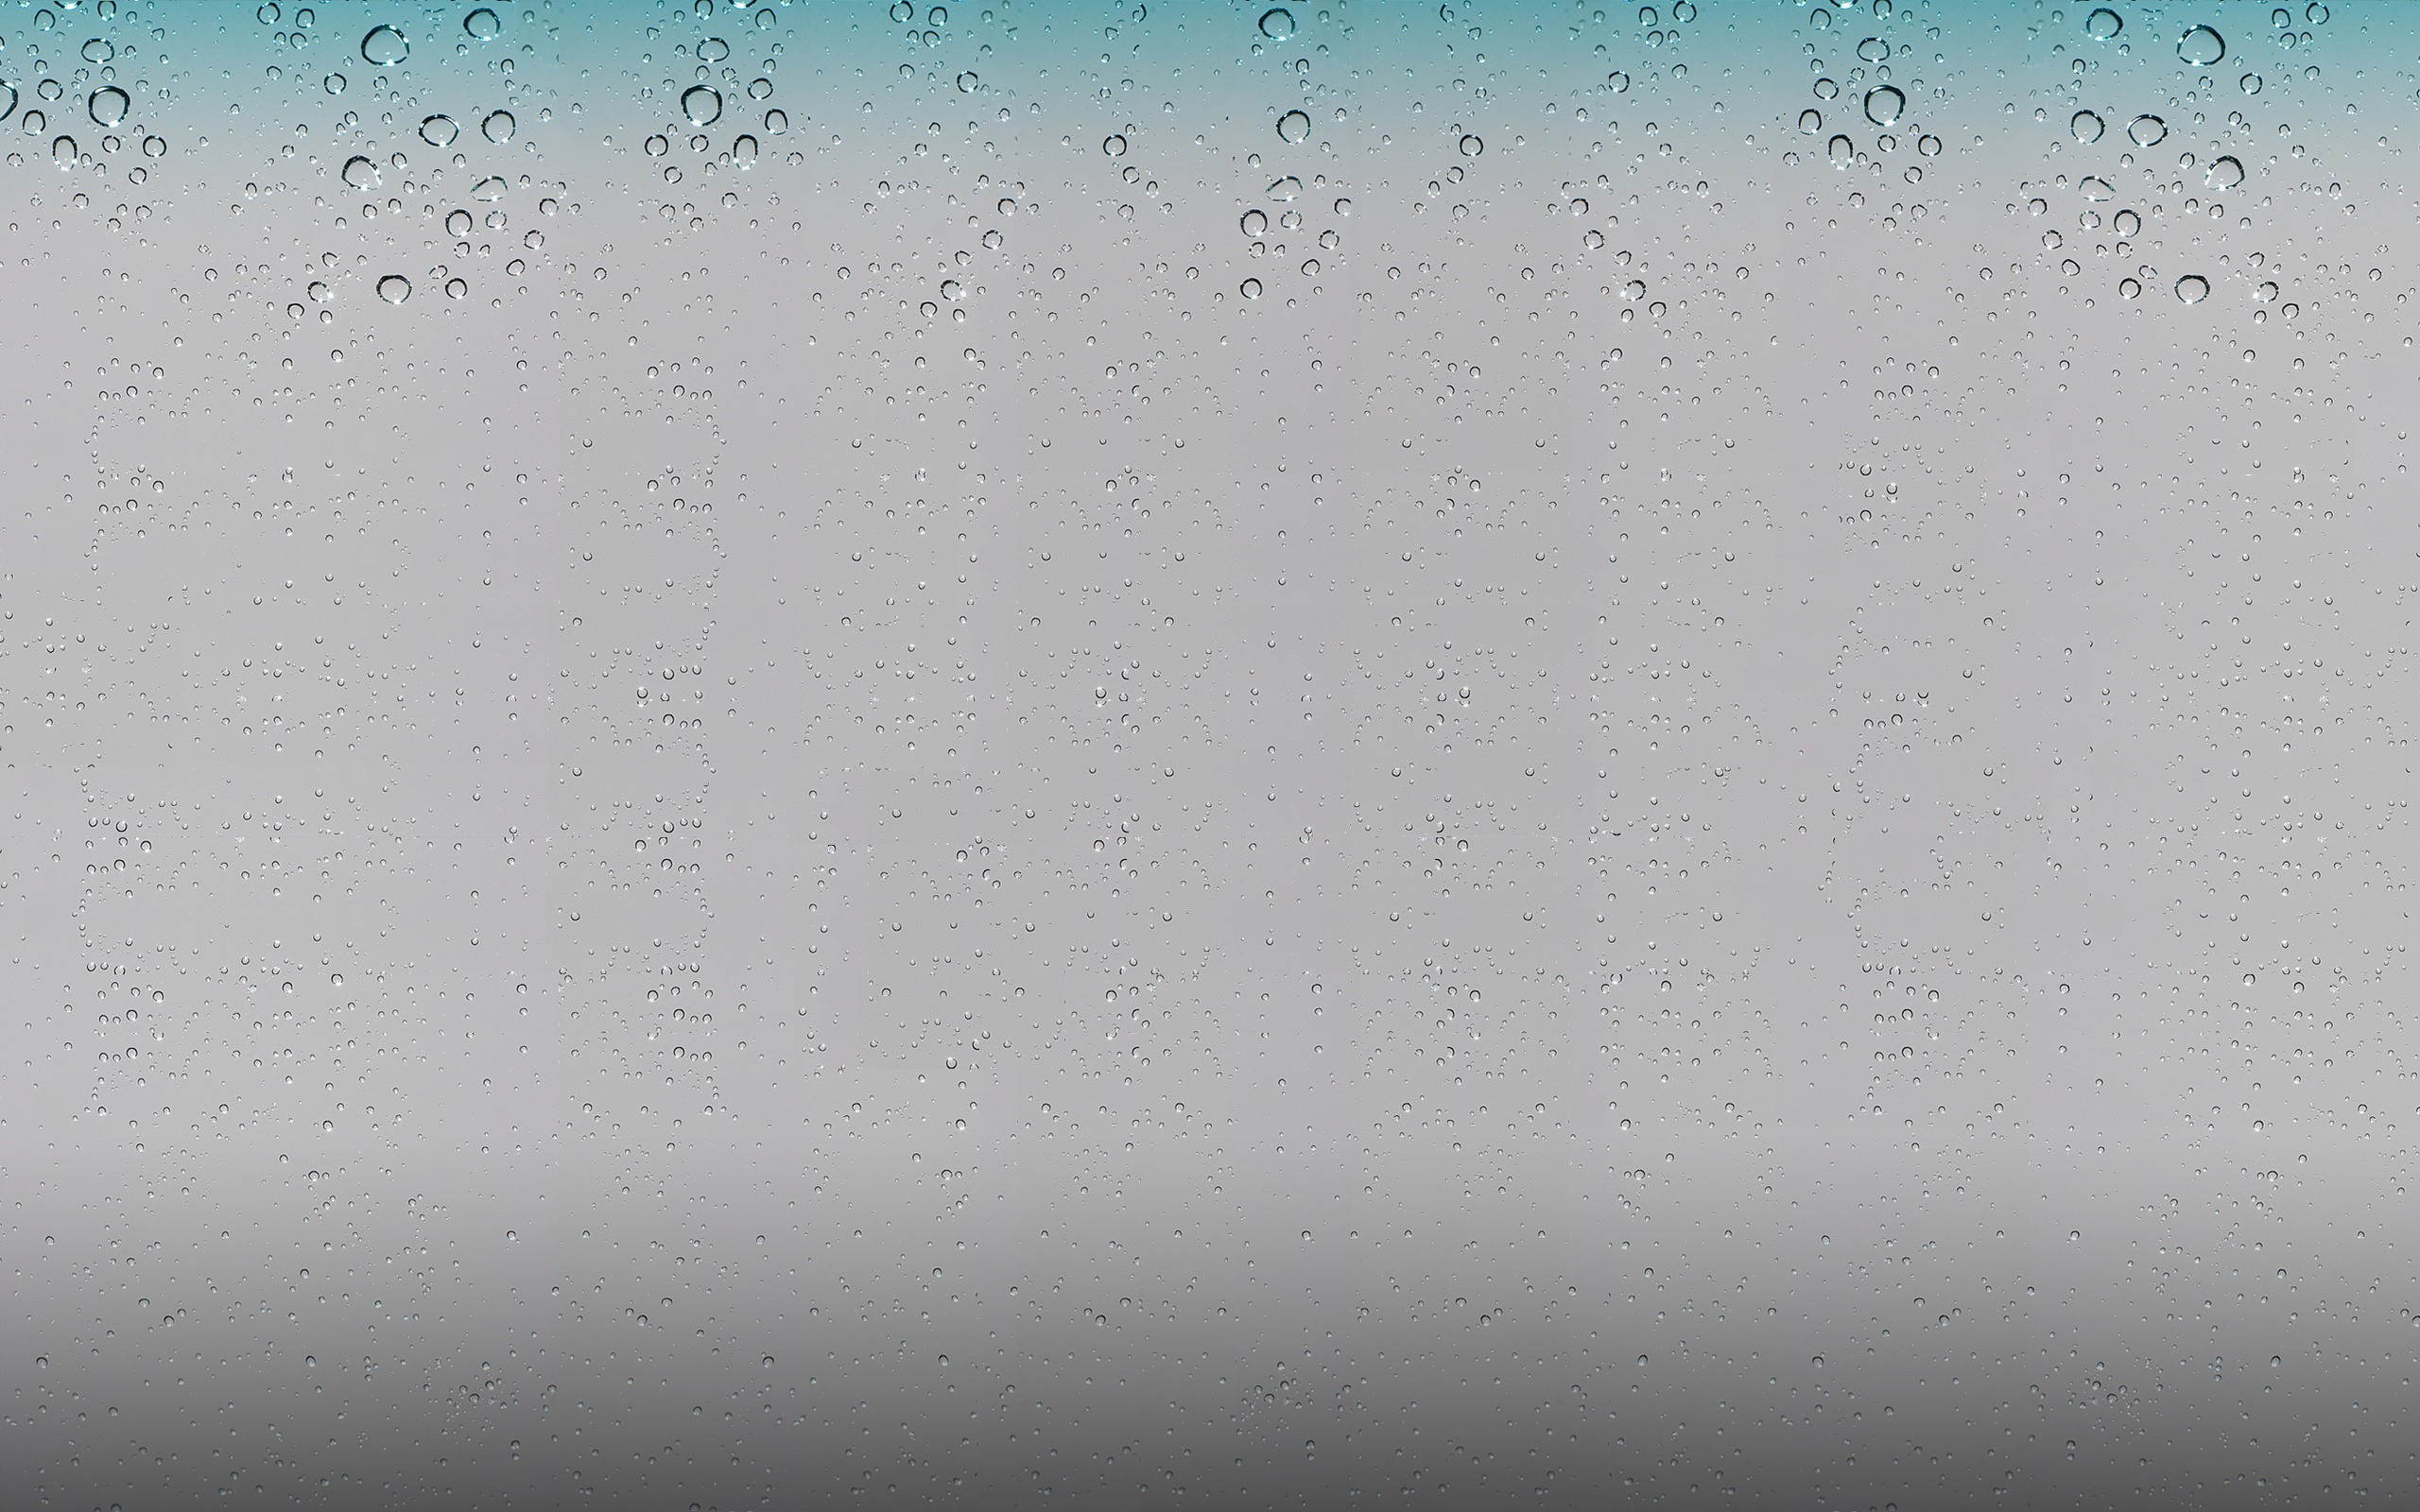 2560x1600 Texture: iOS 4 drops wallpaper background,Original iOS 4 Wallpaper .